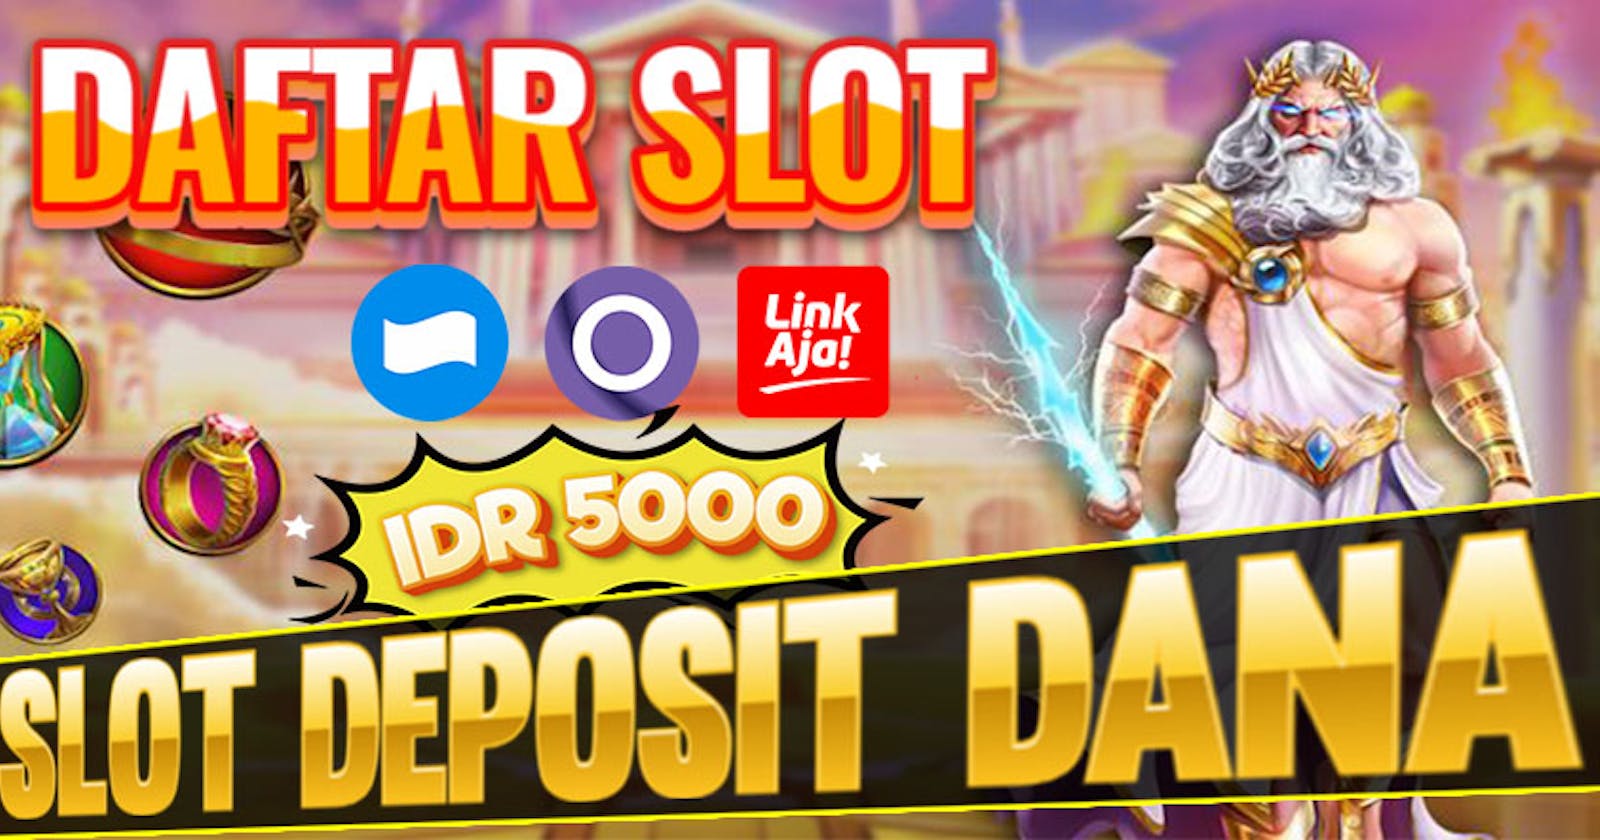 Link Daftar Situs Slot Deposit Dana 5000